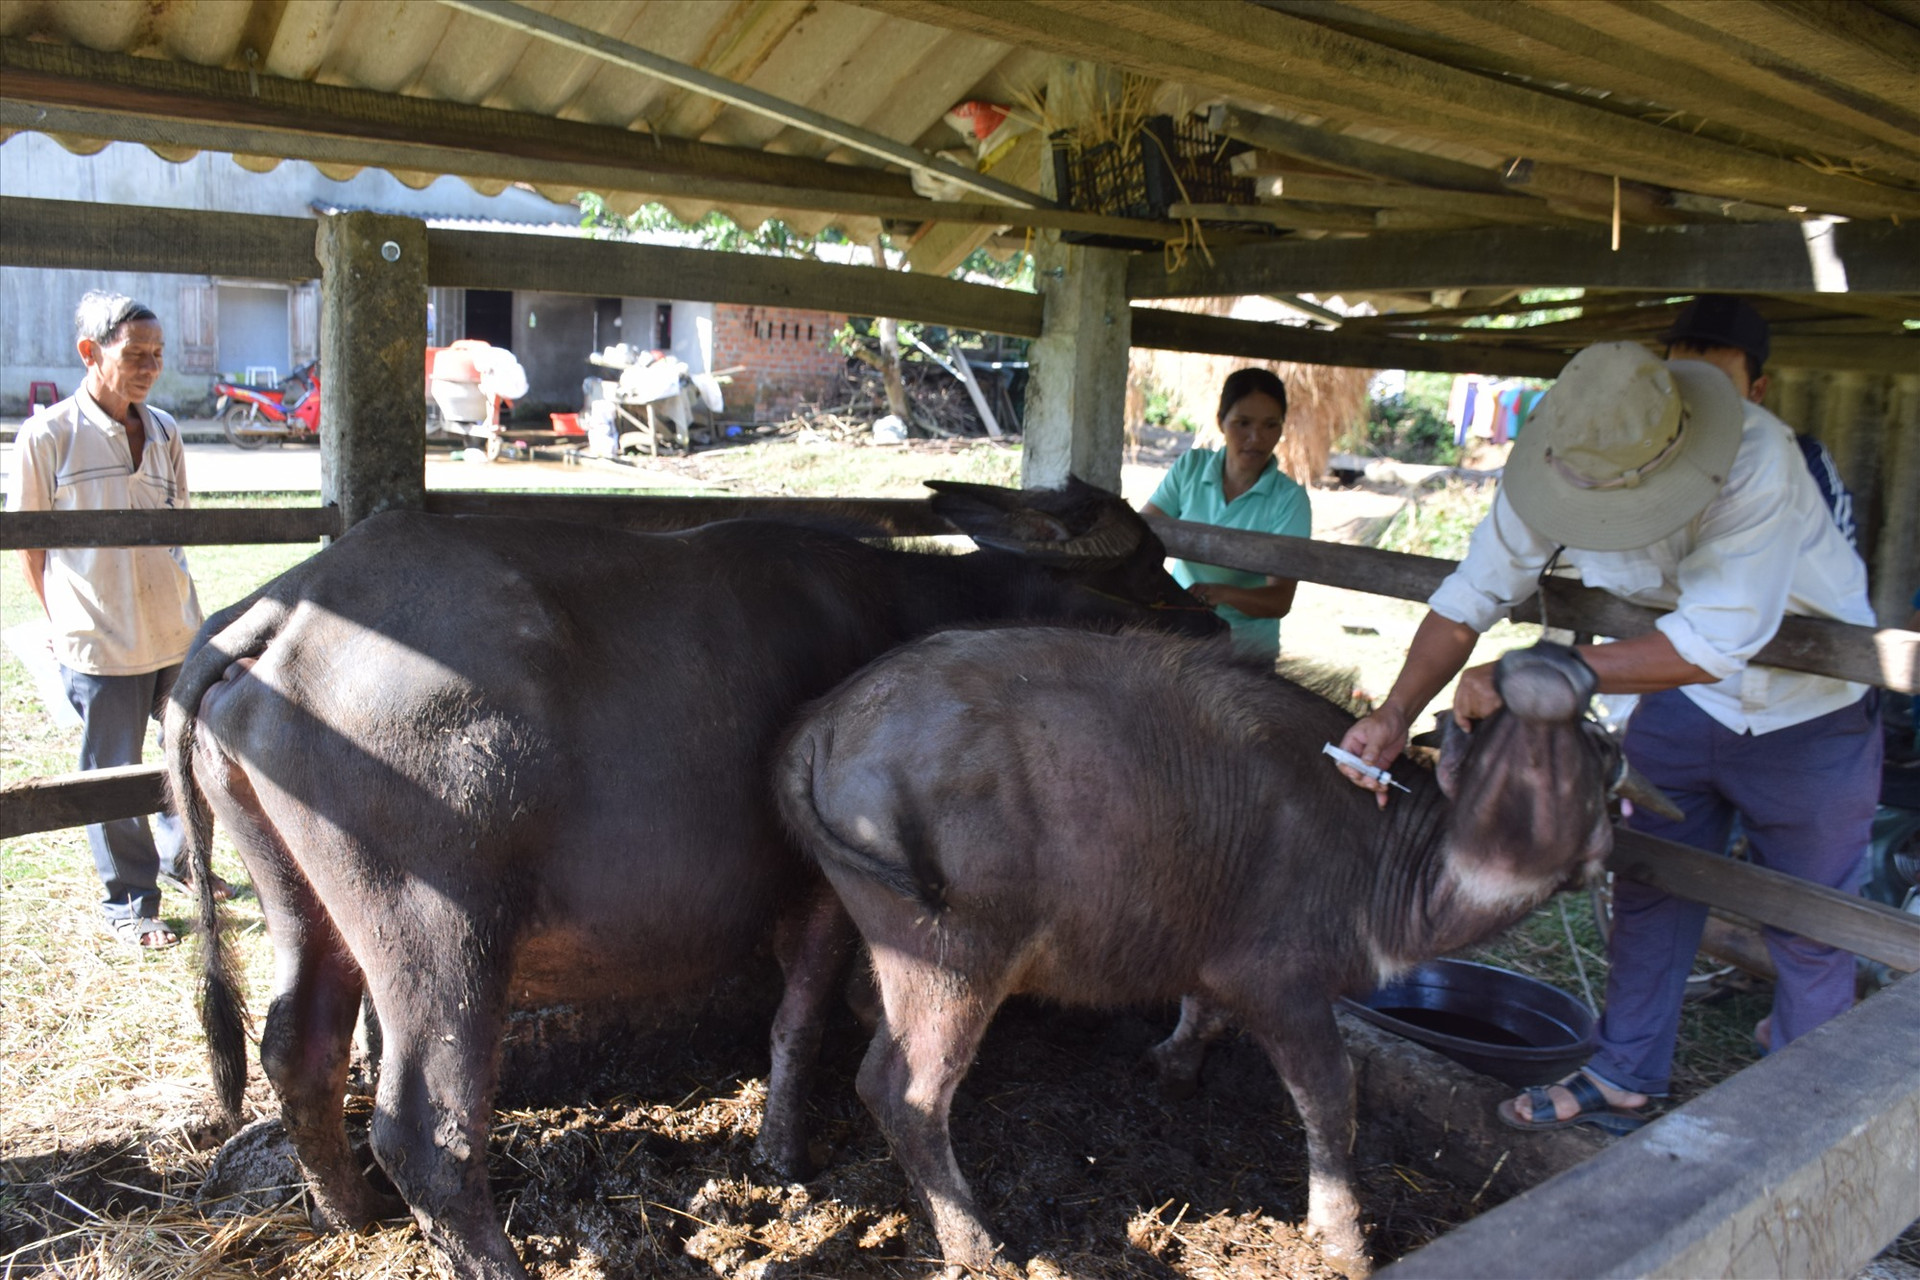 UBND tỉnh yêu cầu các địa phương khẩn trường tổ chức tiêm vắc xin phòng bệnh bắt buộc cho đàn gia súc, gia cầm đợt 1.2020. Ảnh: M.L